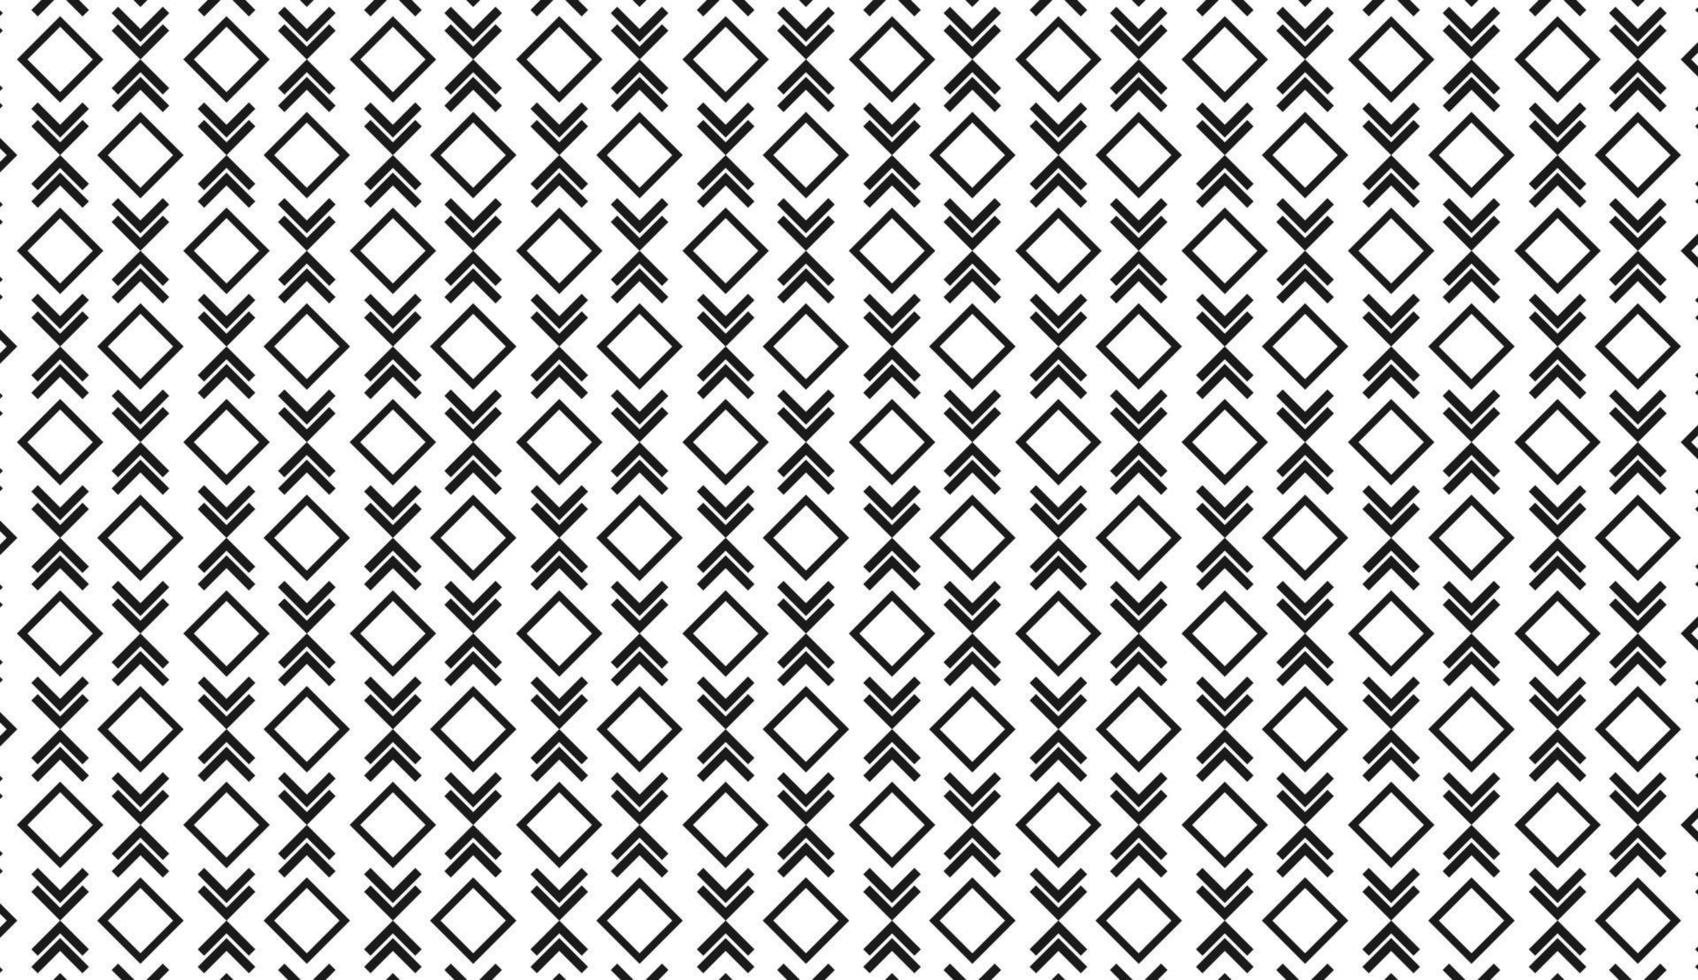 naadloos patroon. zwart-wit ruit en chevron motief. eenvoudig patroonontwerp. kan worden gebruikt voor posters, brochures, ansichtkaarten en andere afdrukbehoeften. vector illustratie